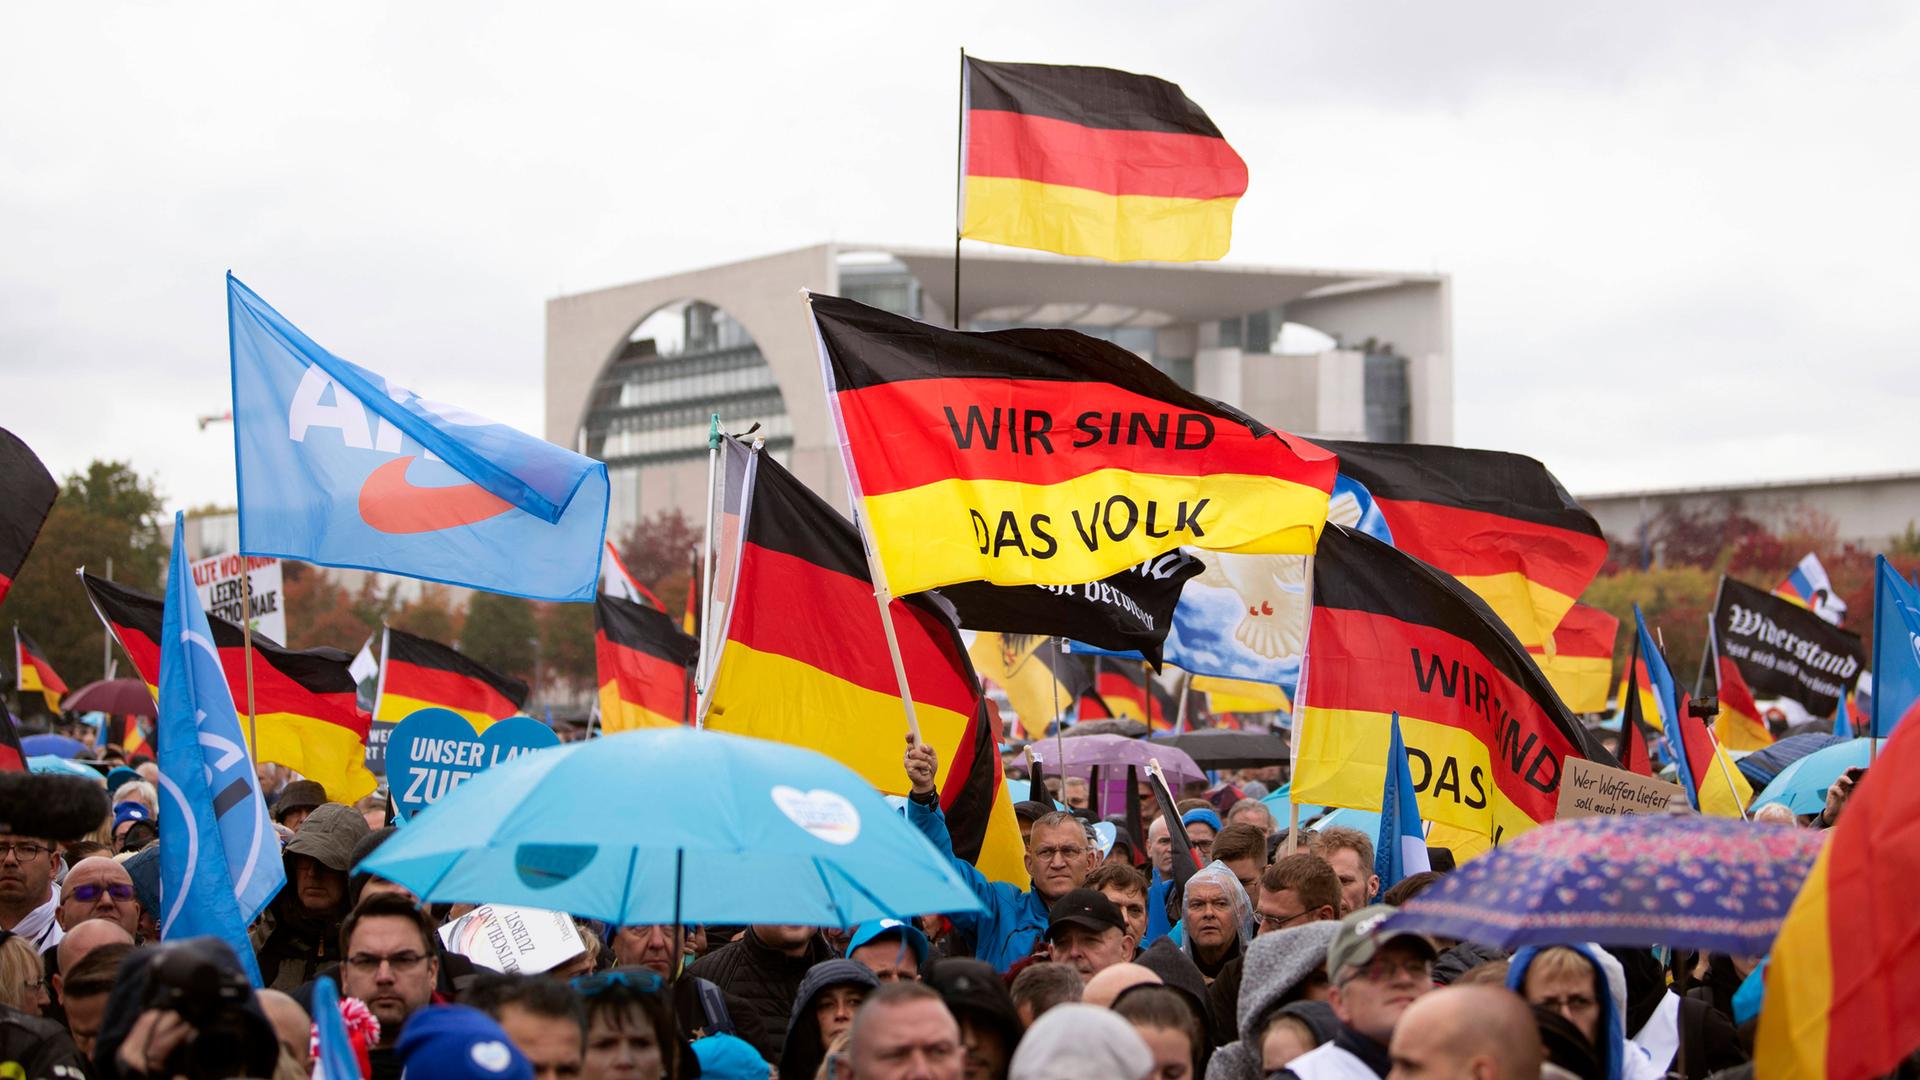 Deutschlandflaggen mit dem Slogan "Wir sind das Volk" auf einer AfD-Demo in Berlin.